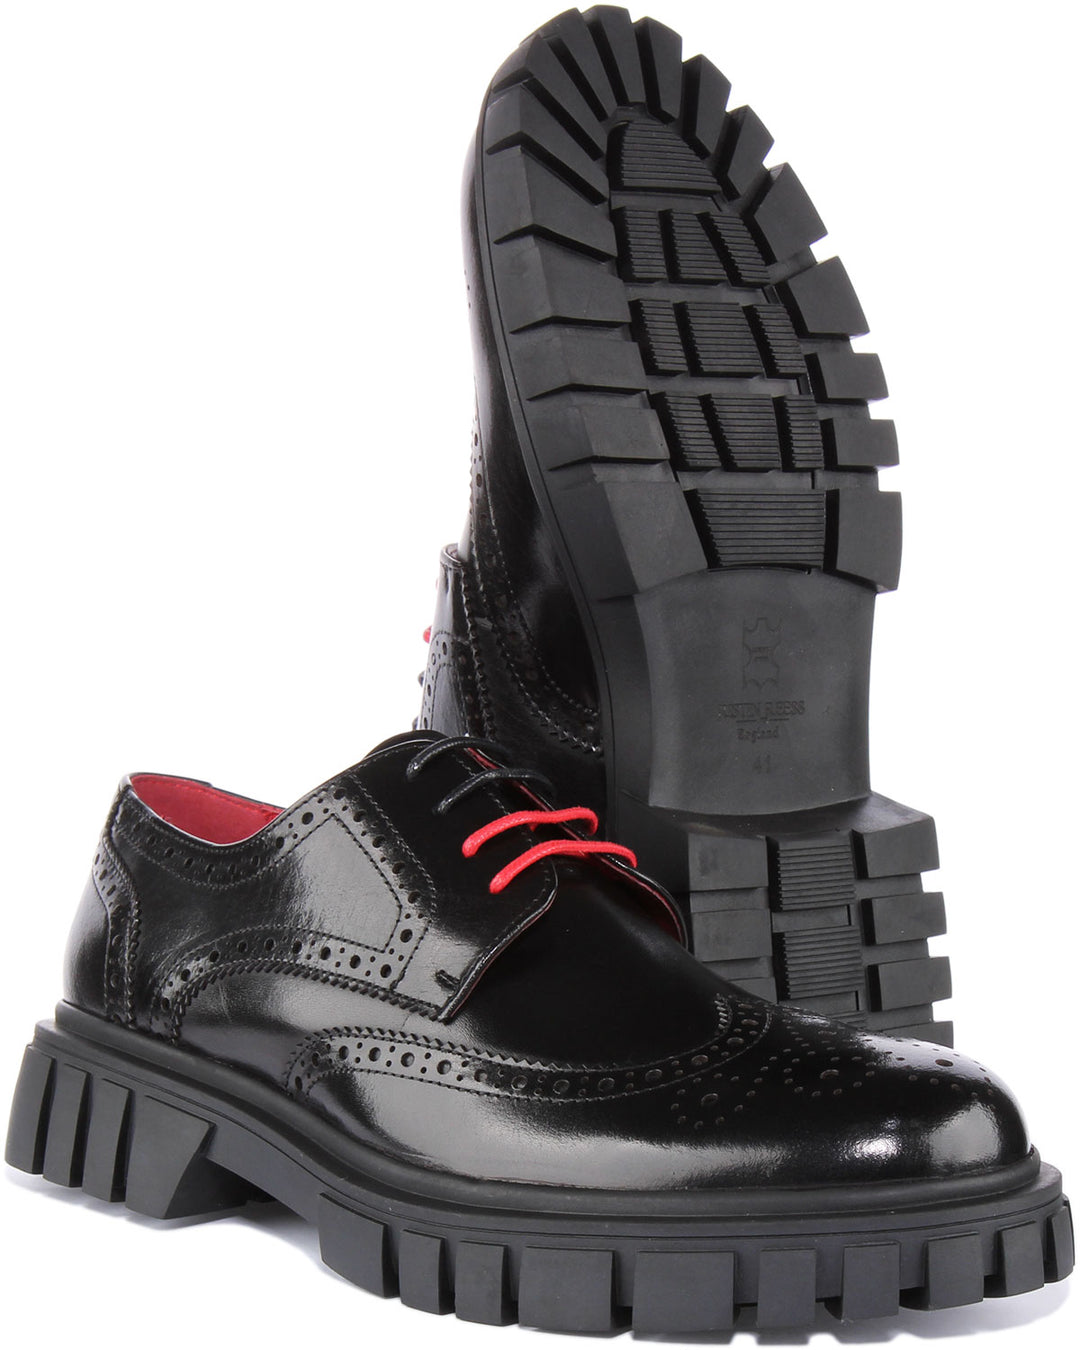 JUSTINREESS Fernando Chaussures brogue à lacets en cuir pour hommes en noir